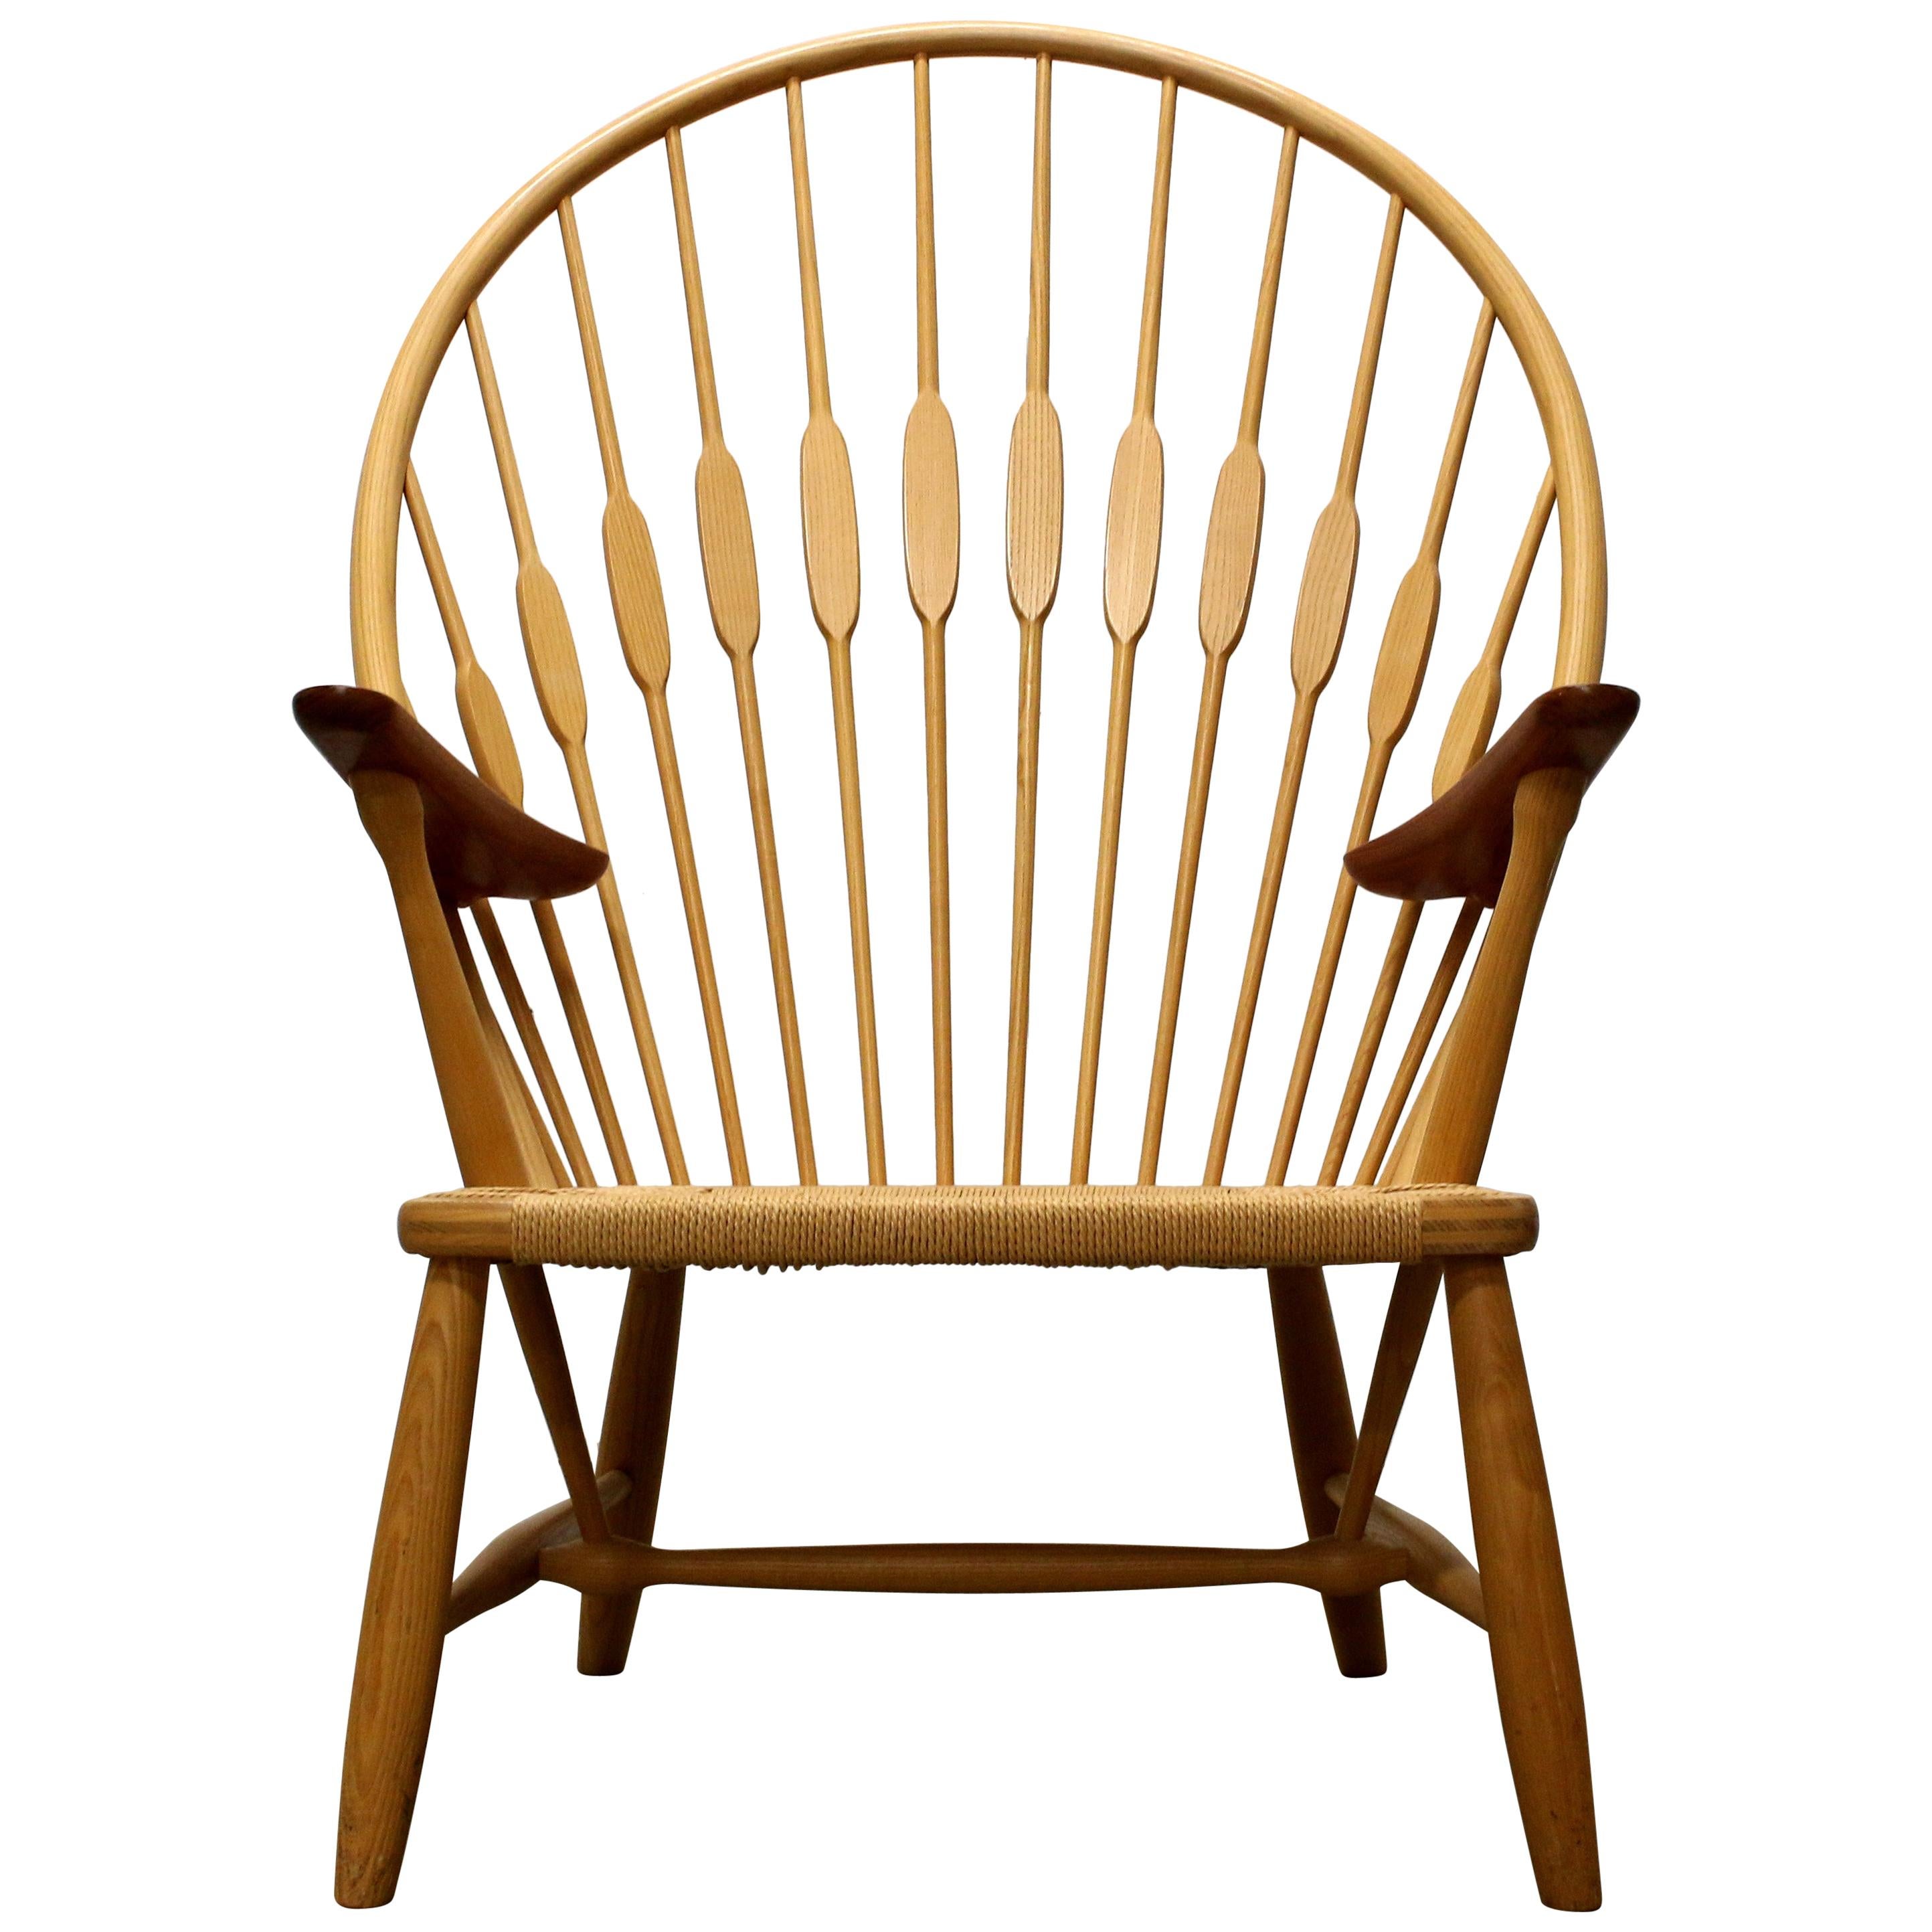 Hans Wegner Peacock Chair, Made by Johannes Hansen, 1950s, Denmark